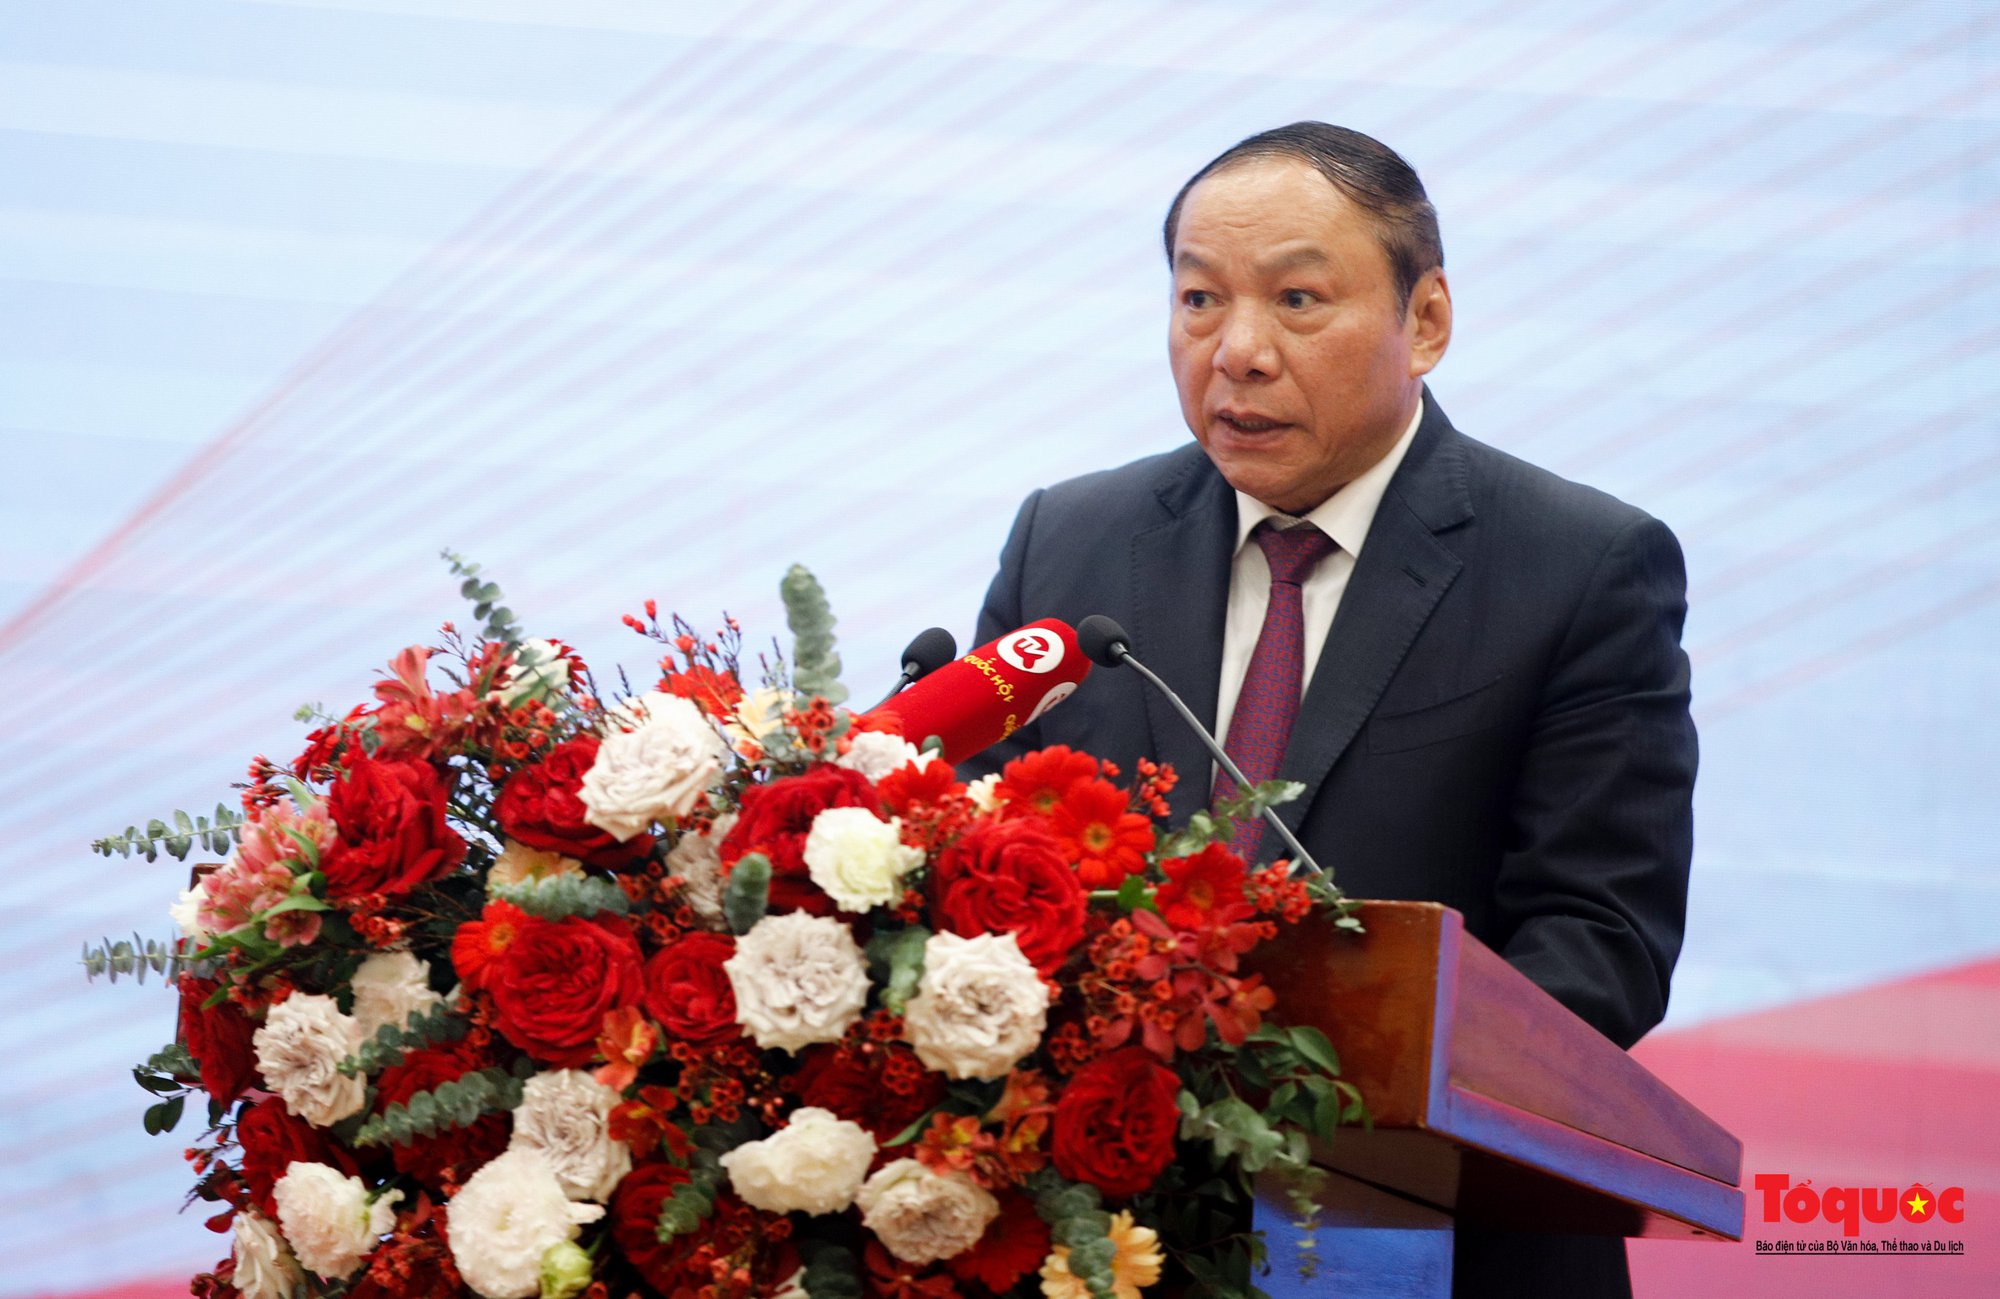 Bộ trưởng Nguyễn Văn Hùng: Dưới "ánh sáng" của Đề cương về văn hóa Việt Nam, quá trình phát triển văn hóa và xây dựng con người Việt Nam đã có những bước tiến tích cực